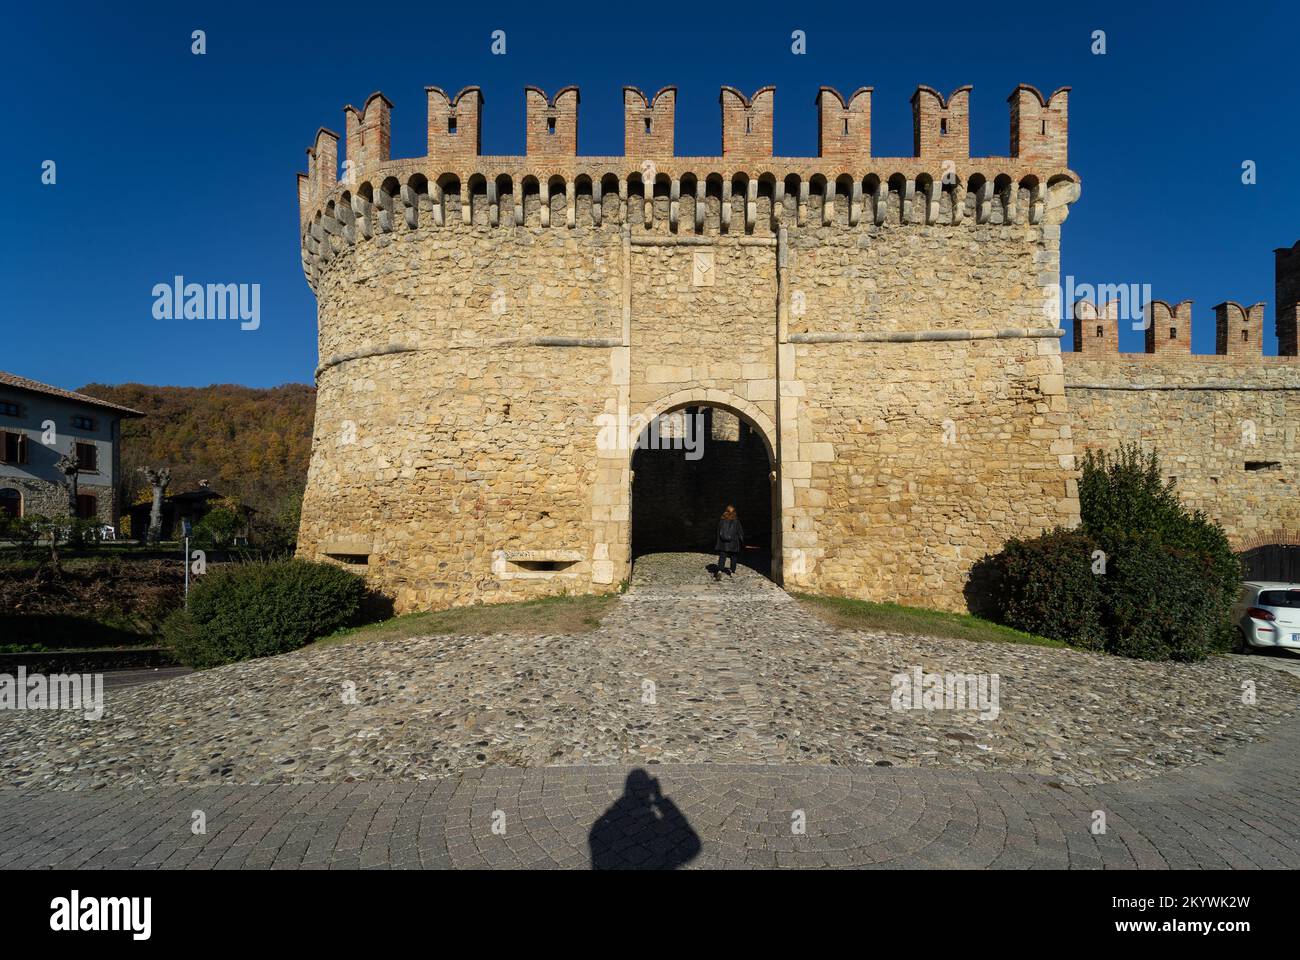 Borgo medievale e castello di Vigoleno nell'Appennino in provincia di Piacenza, Emilia Romagna, Italia settentrionale - porta principale della città Foto Stock